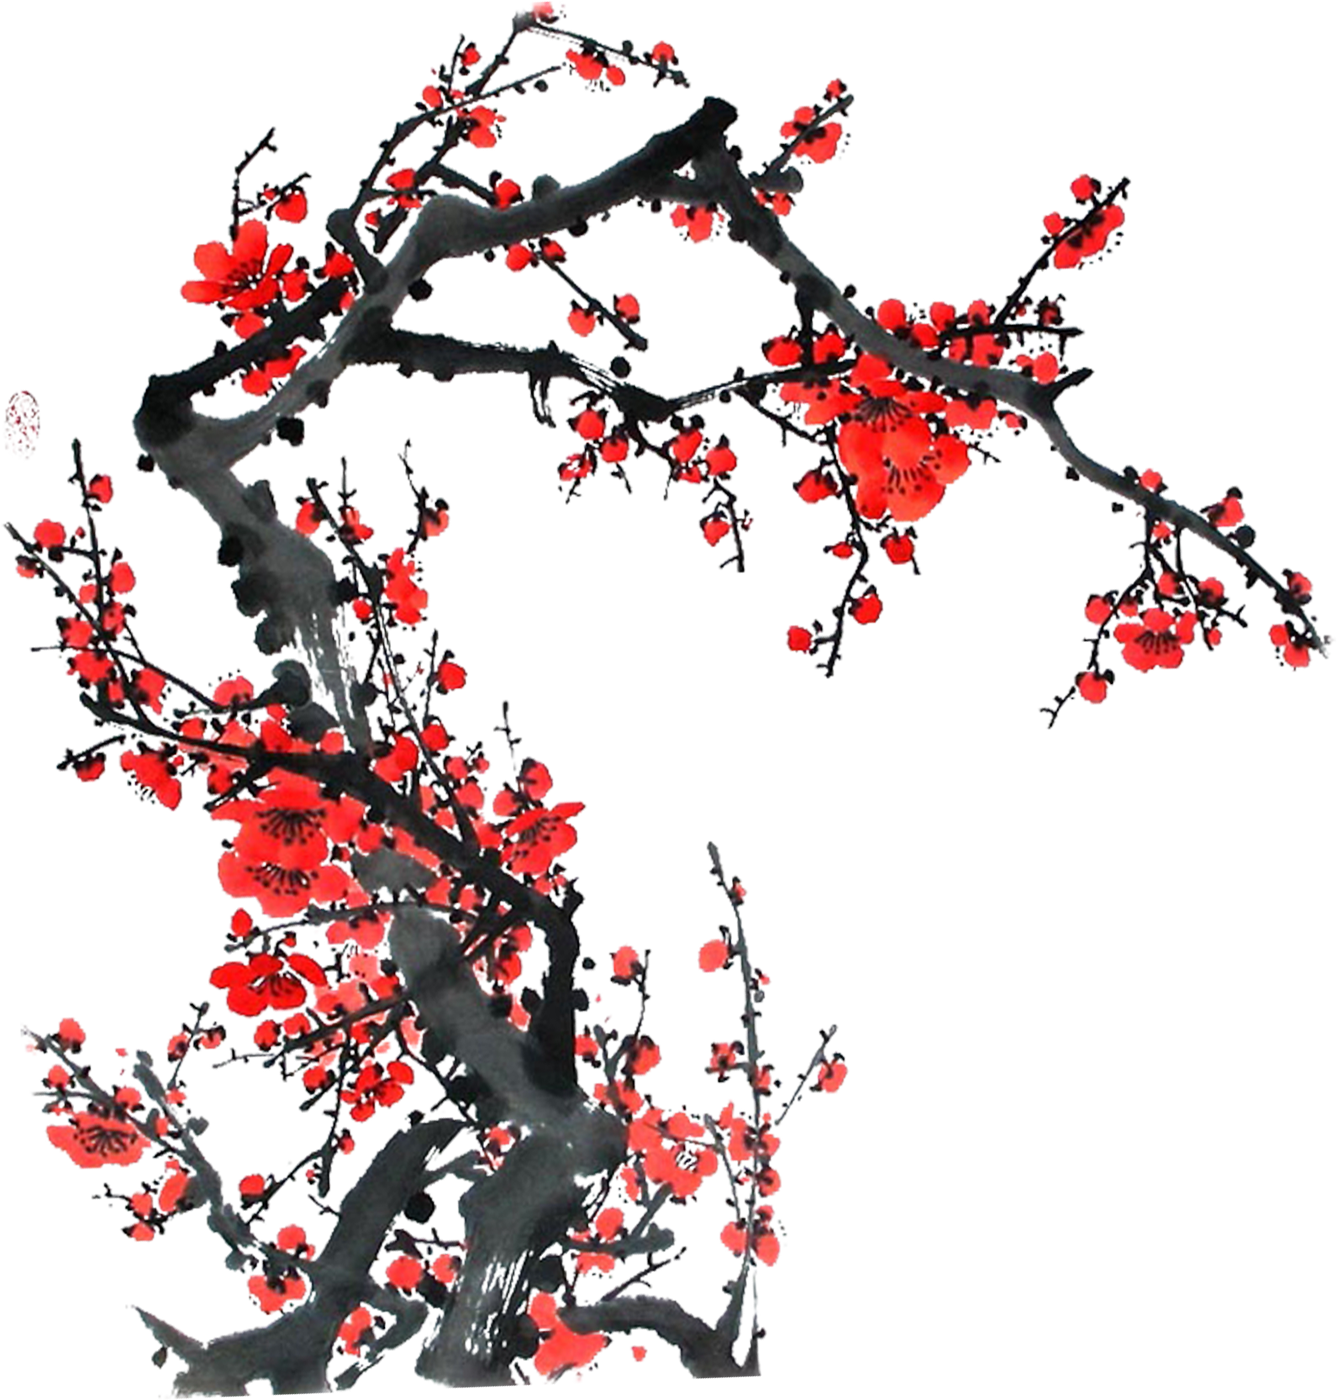 うめ 梅 のイラスト 画像no 044 ウメの木 和風 手書き風 無料のフリー素材集 百花繚乱